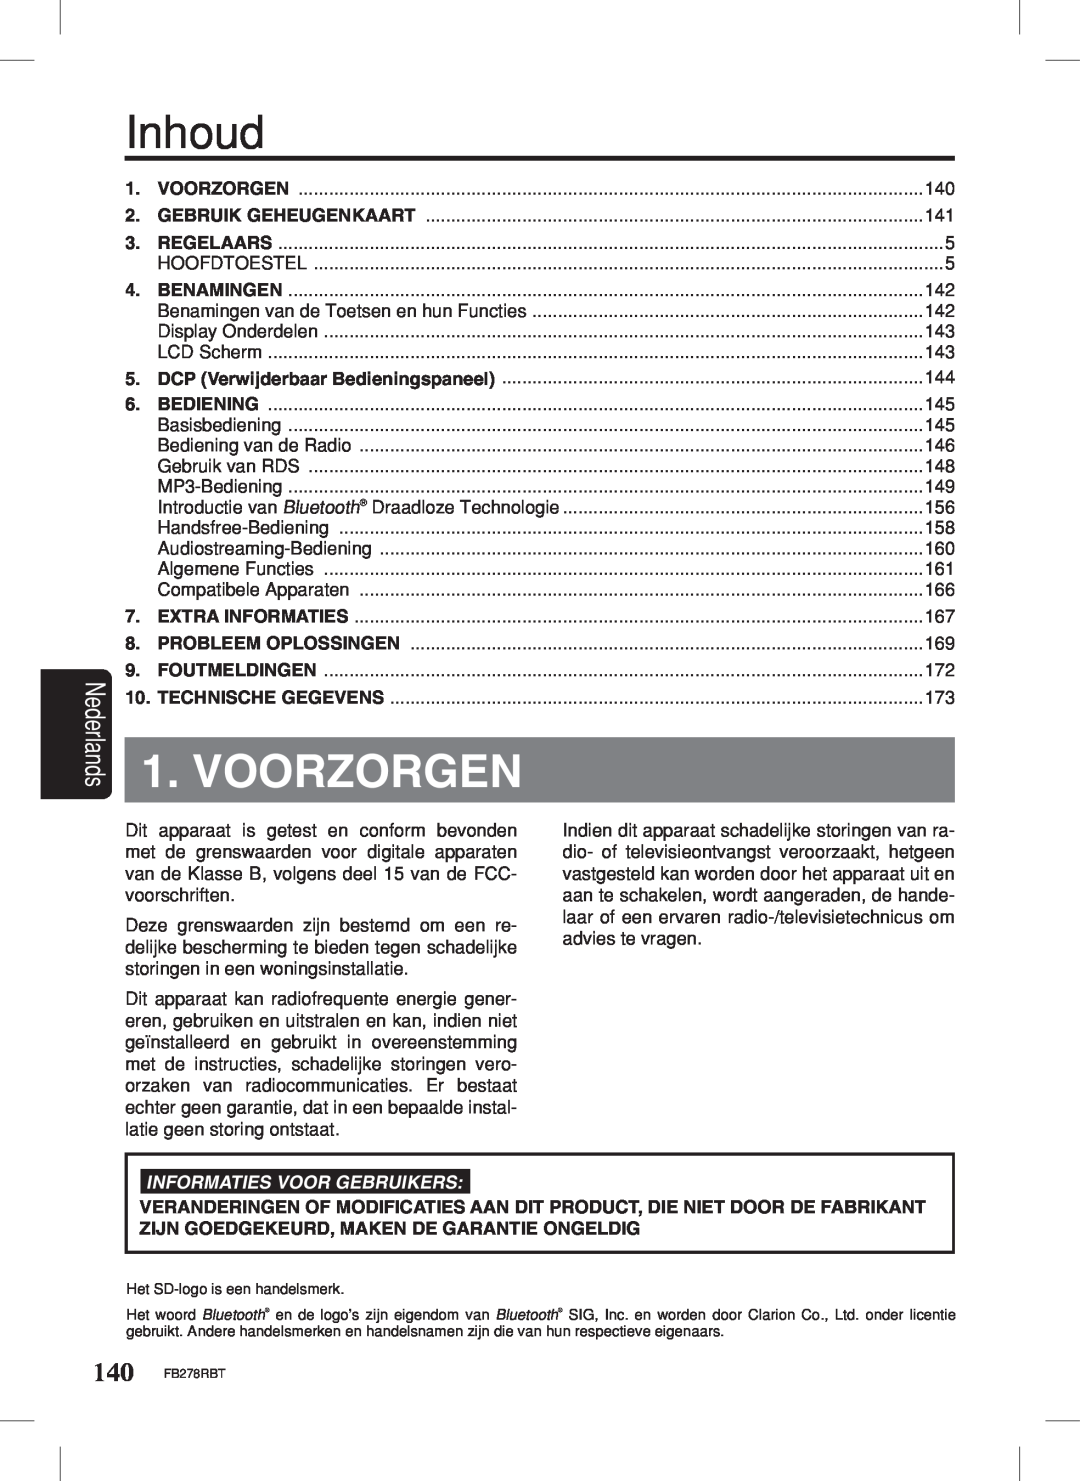 Clarion FB278RBT manual Voorzorgen, Nederlands, Inhoud, Informaties Voor Gebruikers 